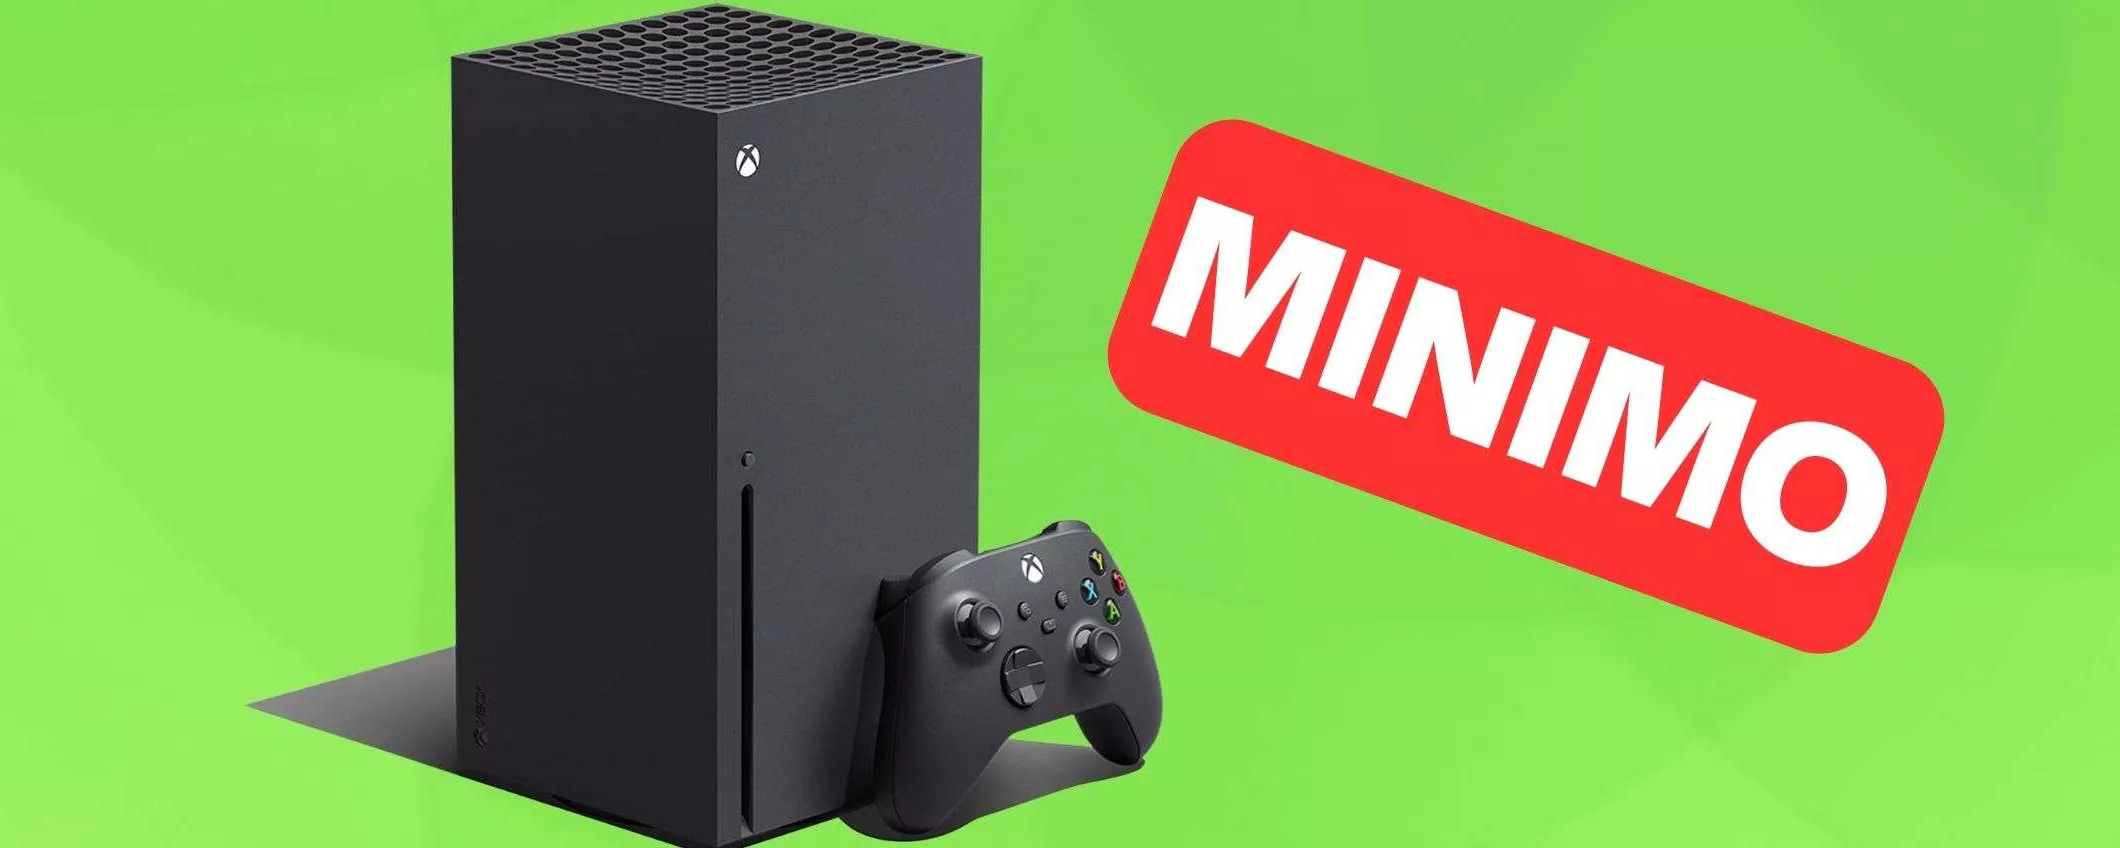 Xbox Series X: il MINIMO STORICO Amazon continua